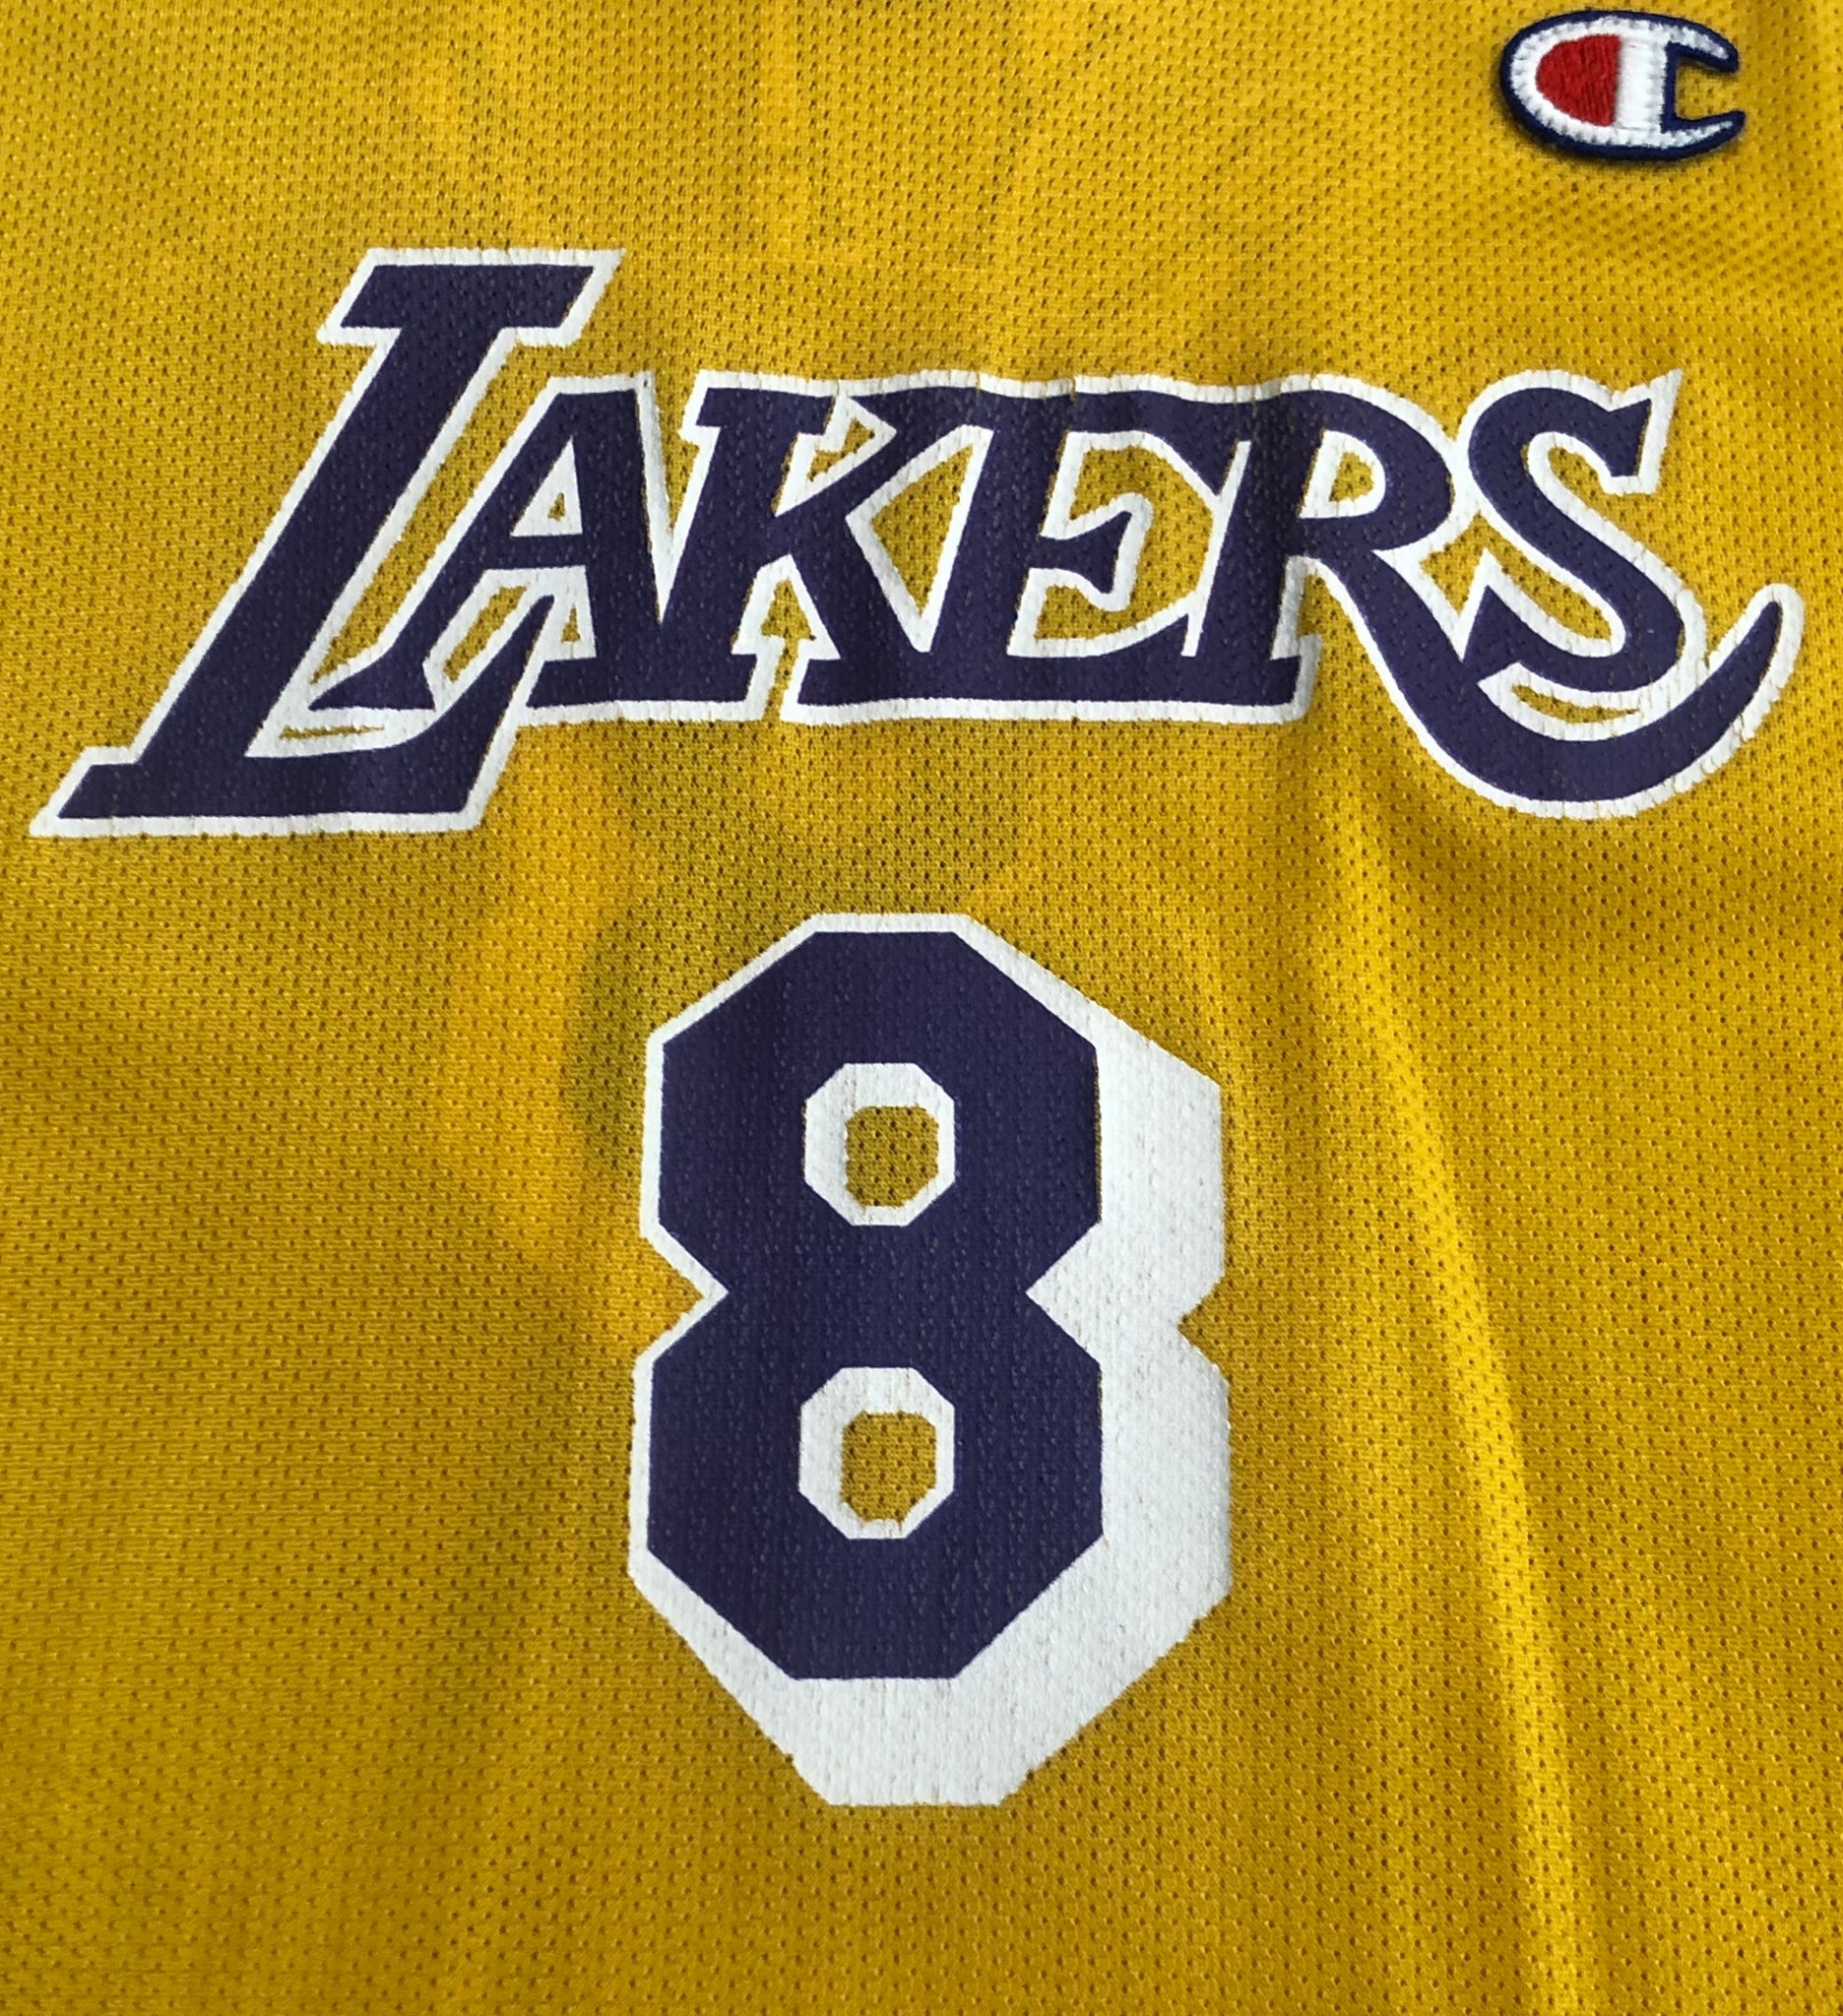 Kobe Bryant Jersey #8 Los Angeles Lakers NBA Vintage reebok medium